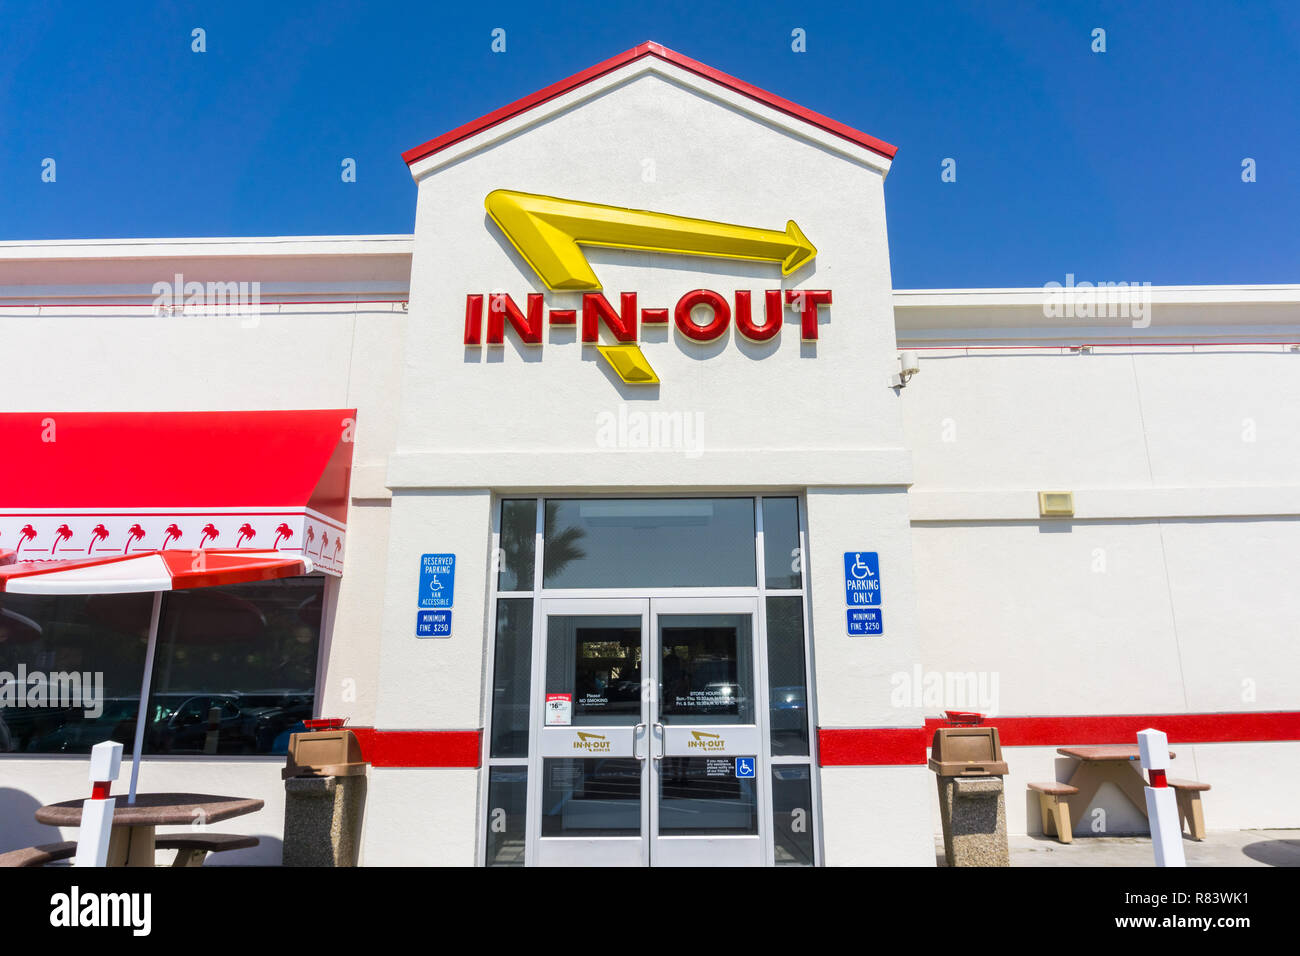 El 4 de septiembre de 2018, San Jose, CA / USA - En-N-Out logotipo que aparece encima de la entrada a uno de sus ubicaciones en el sur de San Francisco Bay Area Foto de stock